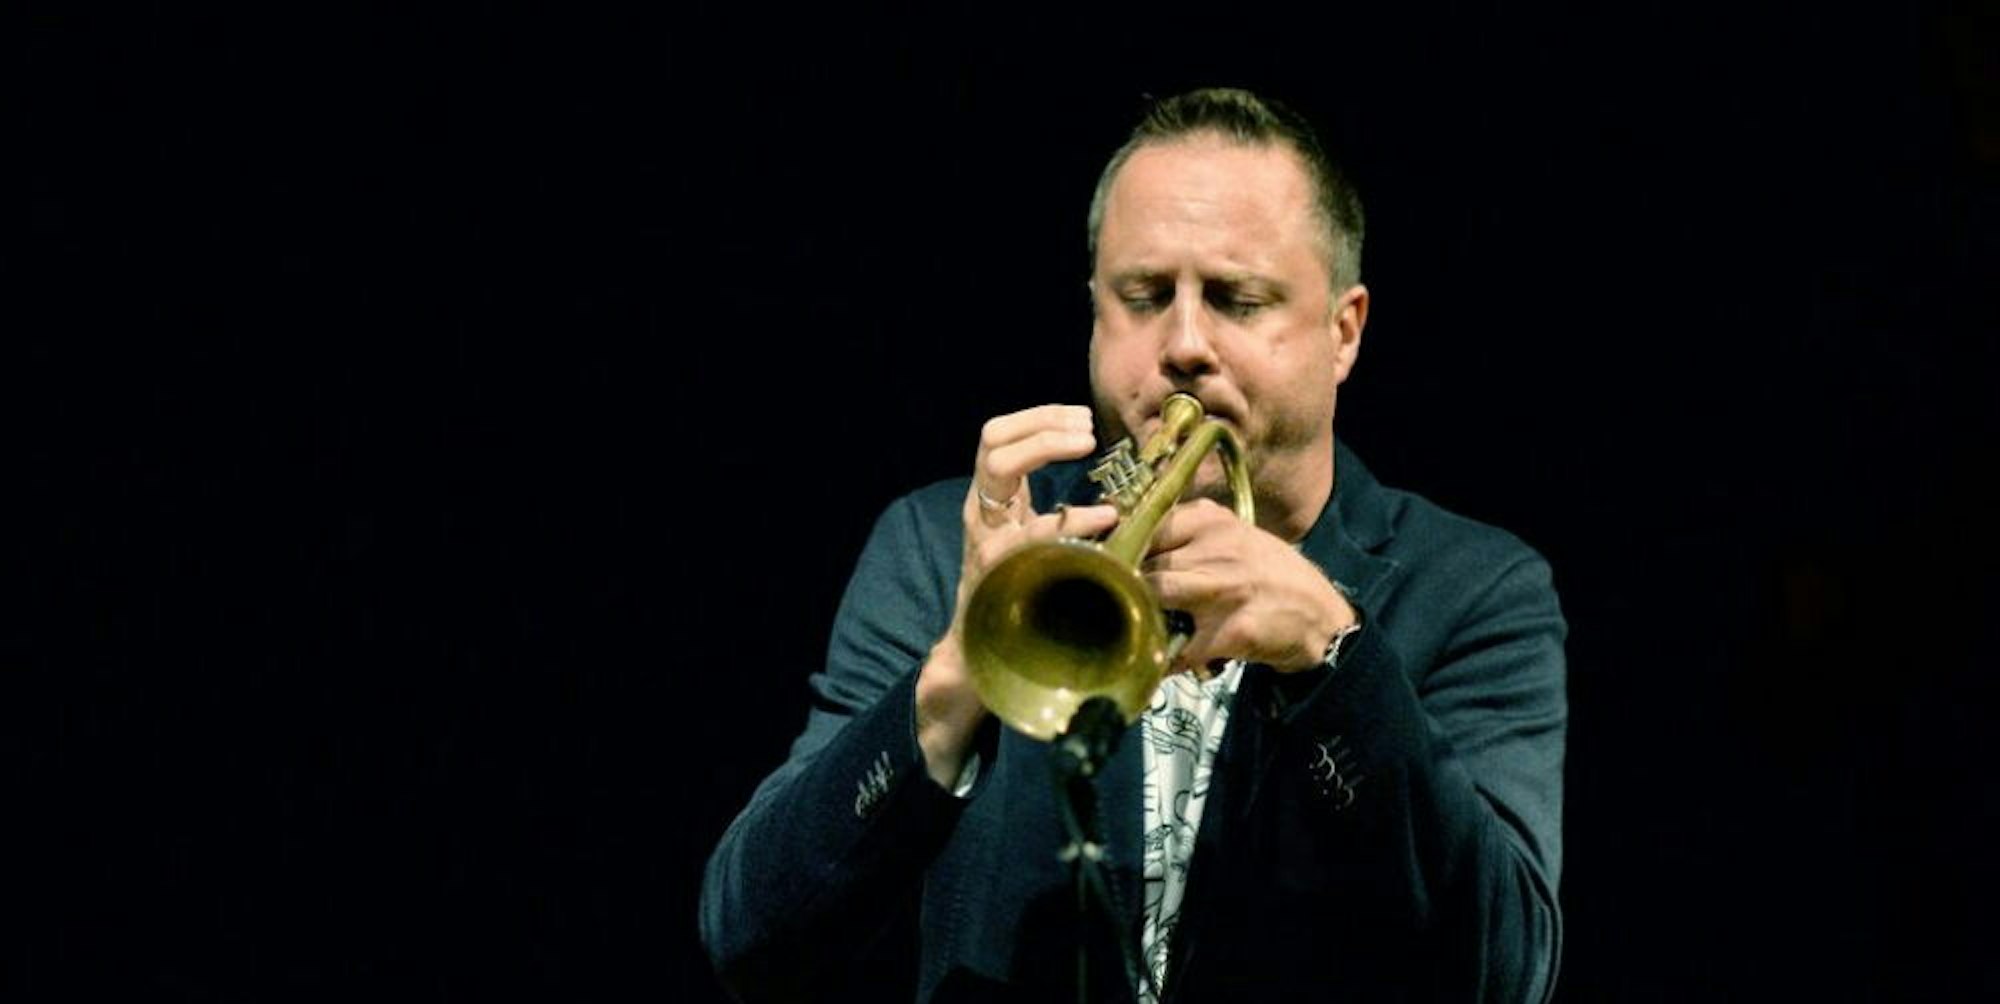 Auch Rheinbachs Musikschulleiter, der Trompeter Peter Protschka, kann mit seiner Band für das Festival gebucht werden.